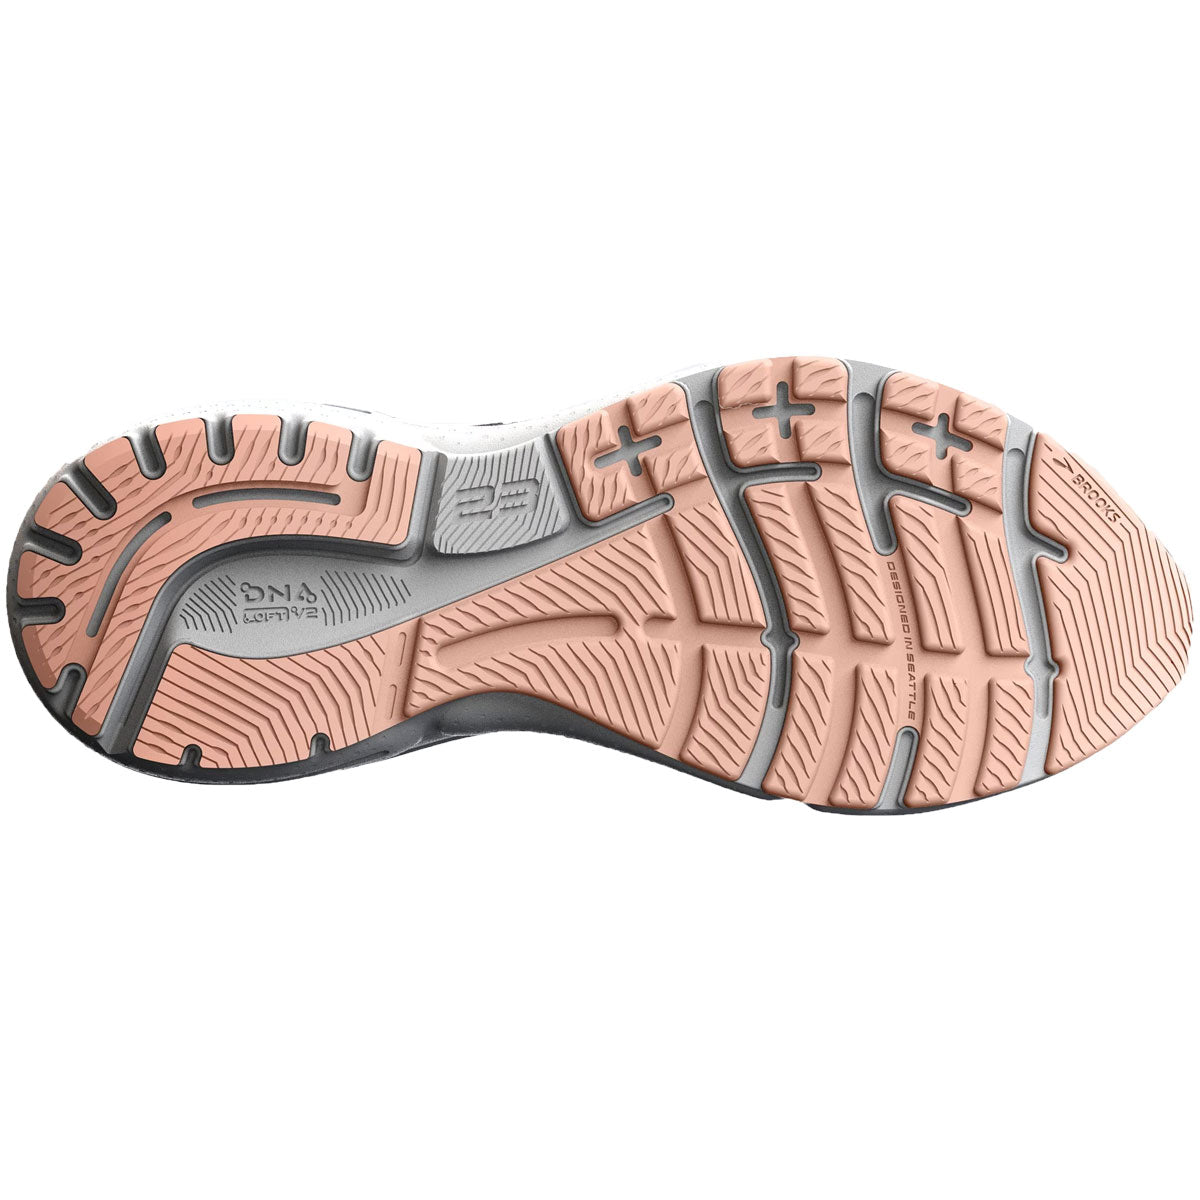 Brooks Adrenaline GTS 23 Running Shoes - Womens - Peacoat/Tangerine/Peach